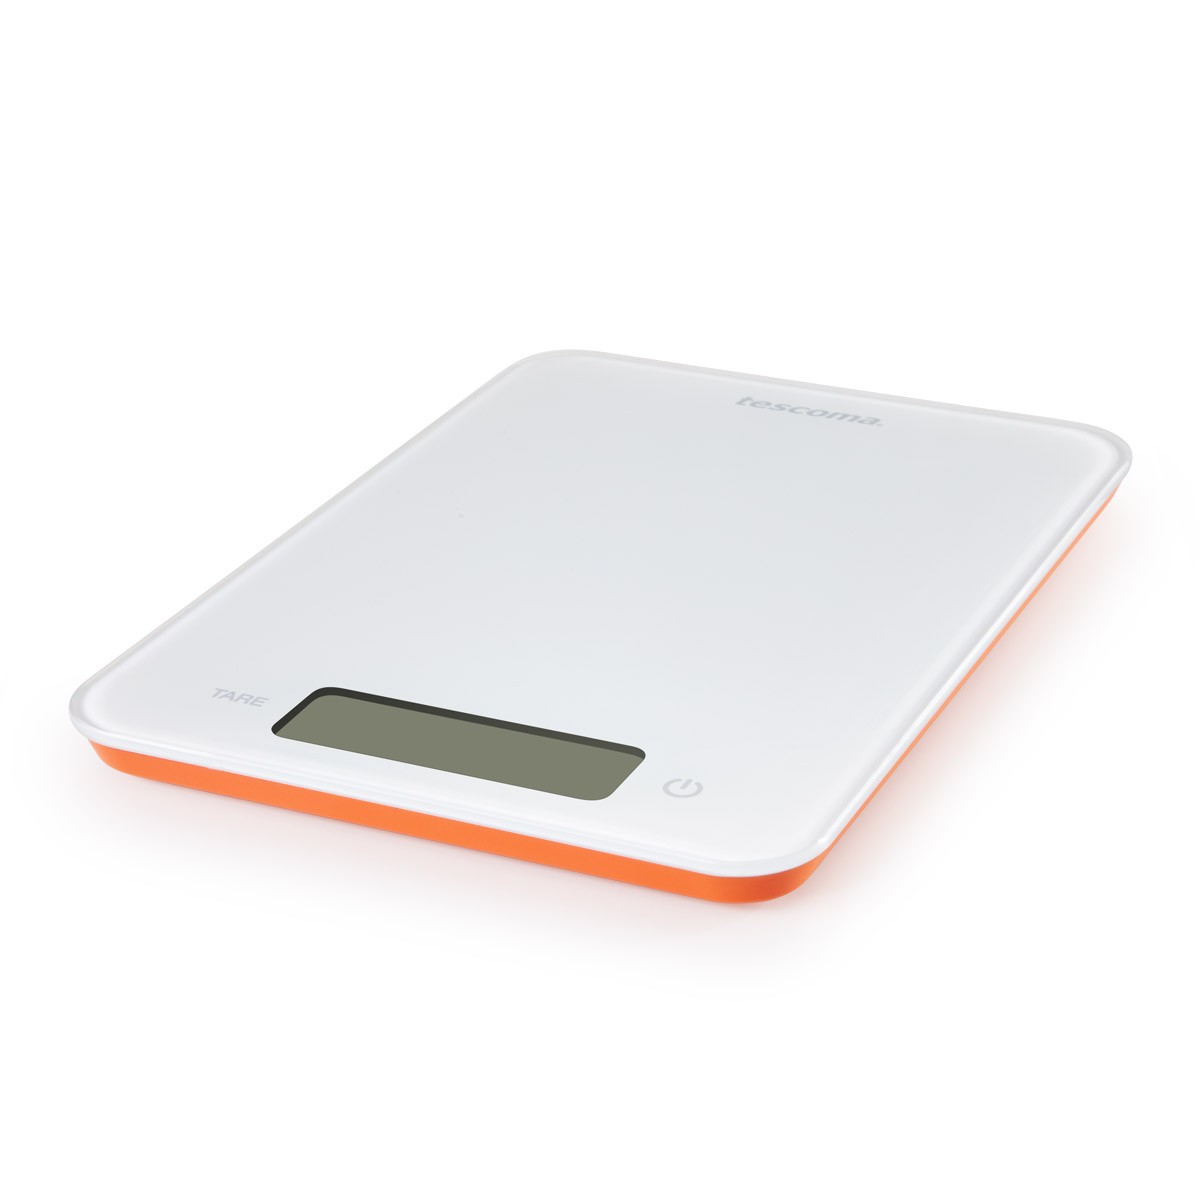 Digitální kuchyňská váha ACCURA 15,0 kg